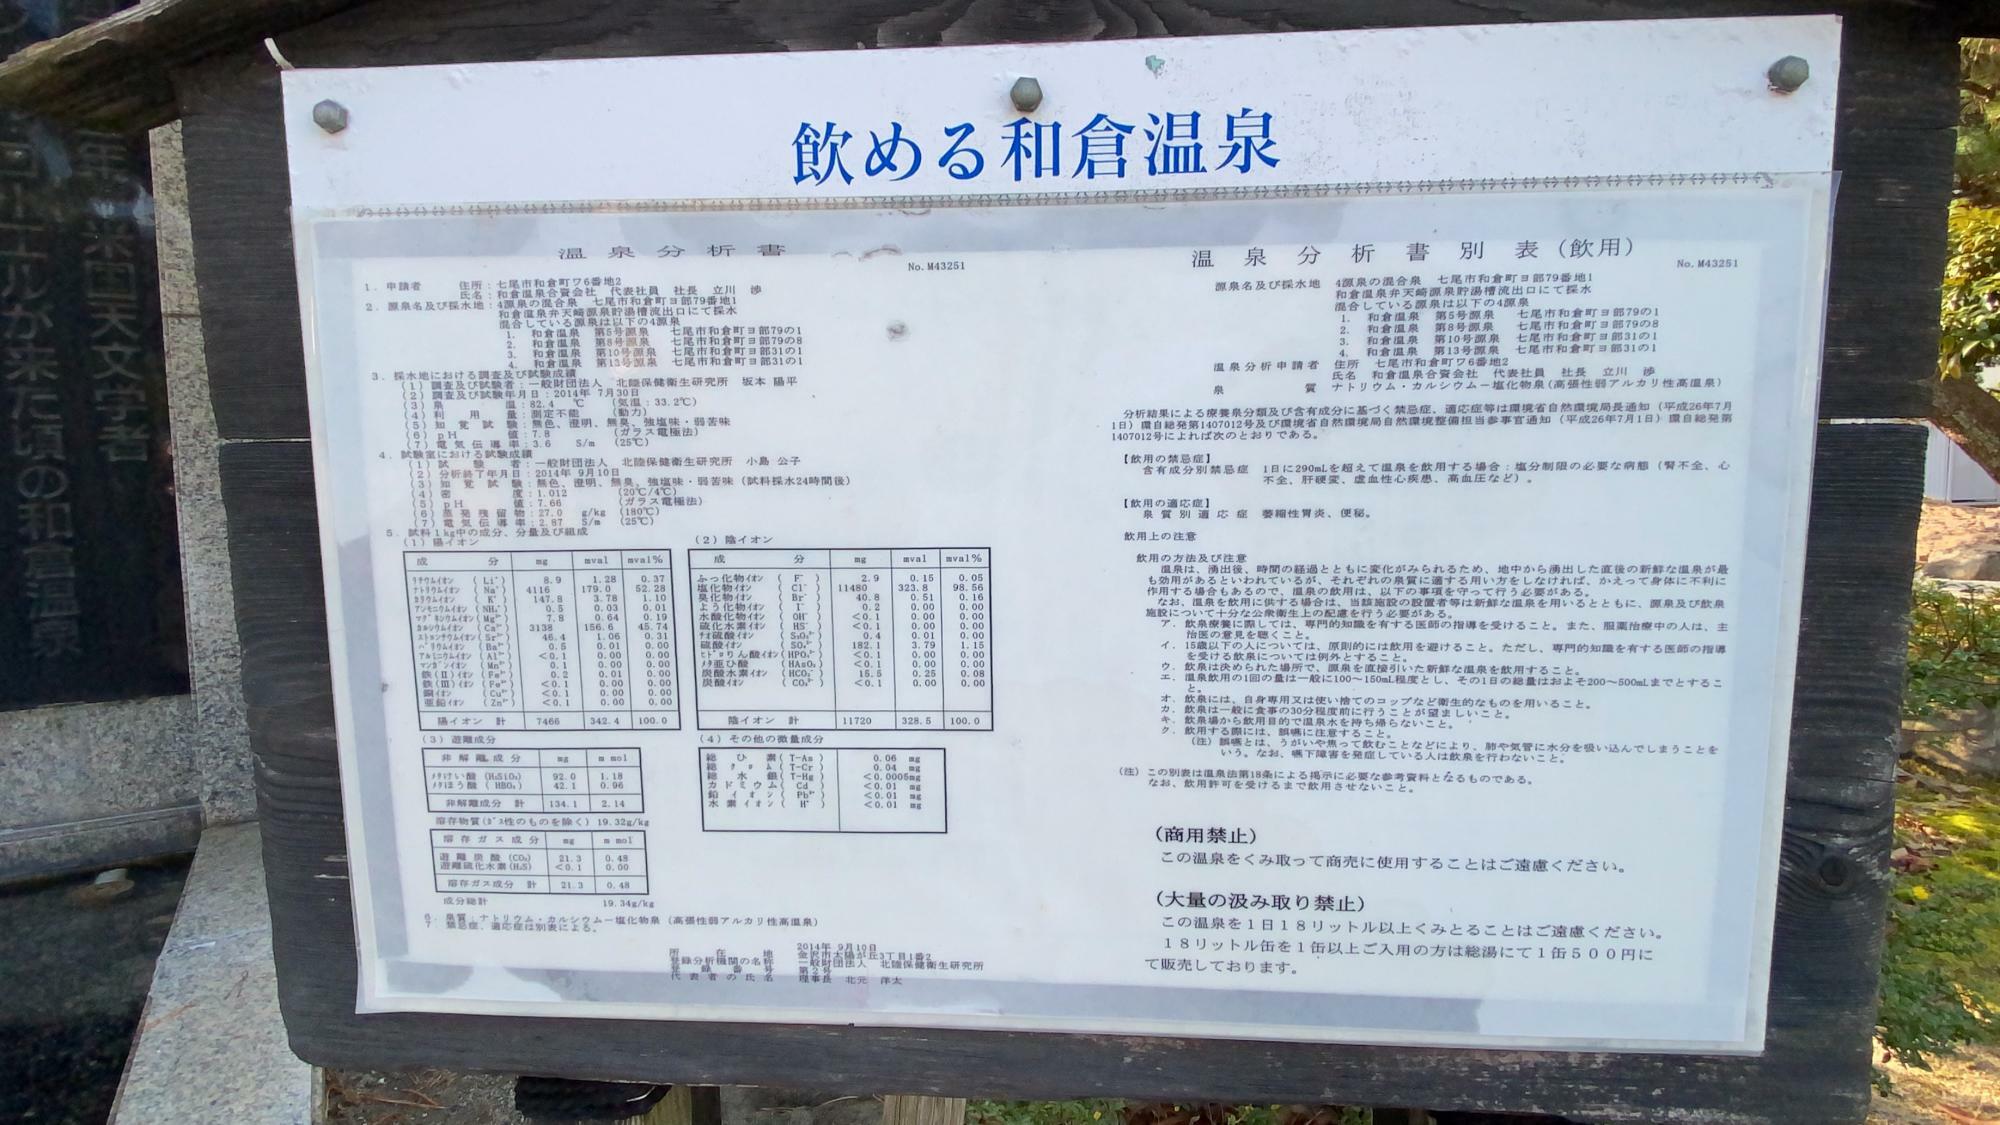 和倉温泉の飲泉所の温泉分析書